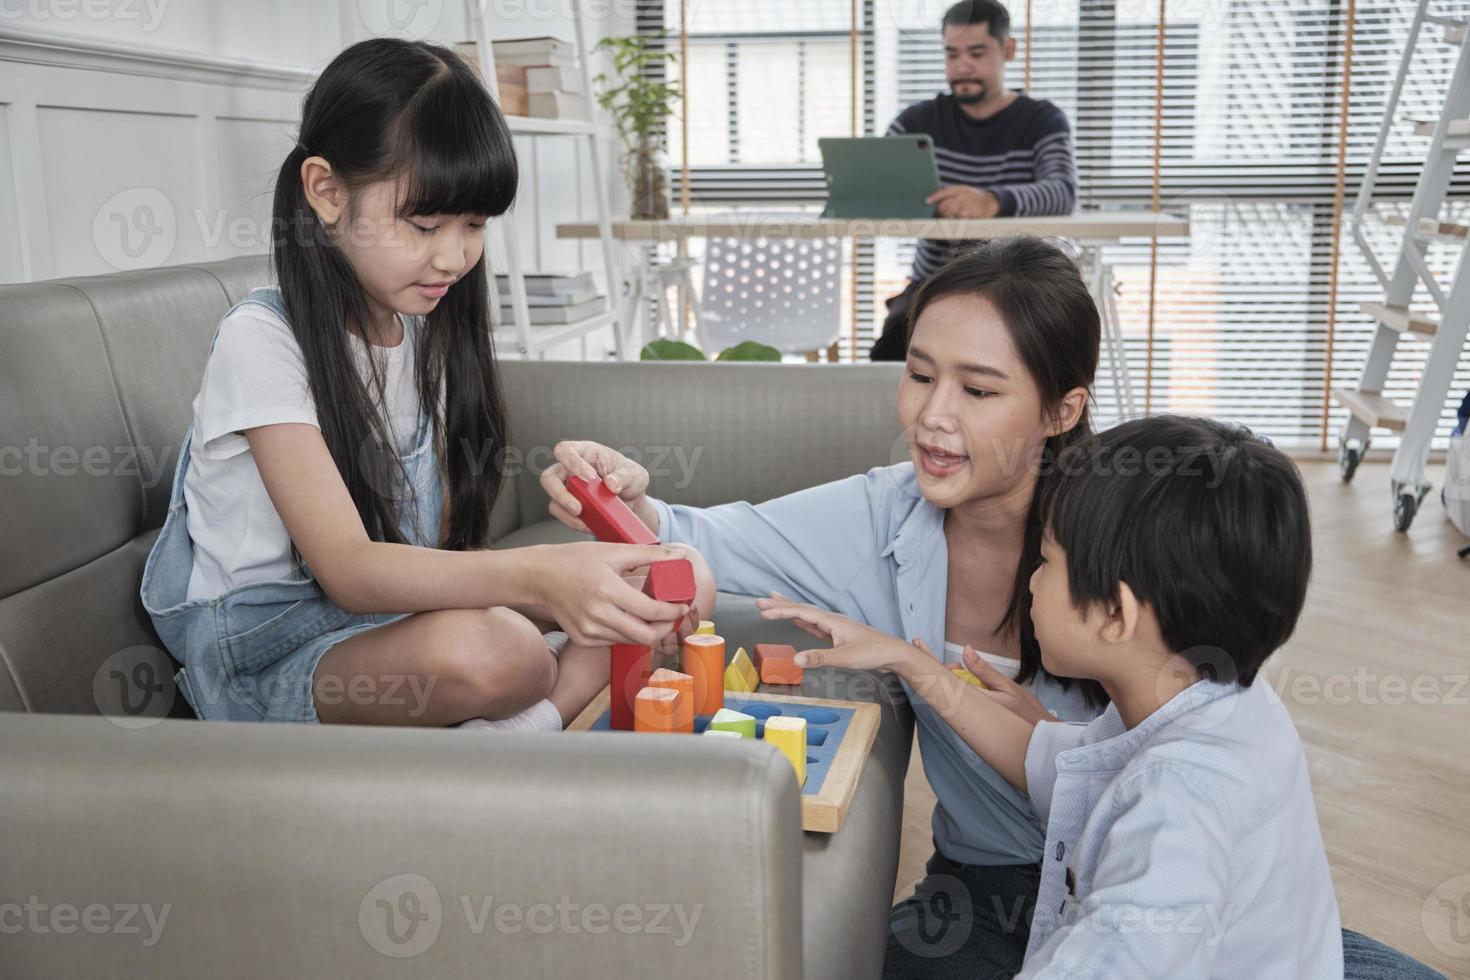 glad asiatisk thailändsk familjeomsorg, mamma och små barn har roligt när de leker med färgglada leksaksblock tillsammans på soffan i det vita vardagsrummet medan pappa jobbar, fritidshelg och välbefinnande livsstil. foto